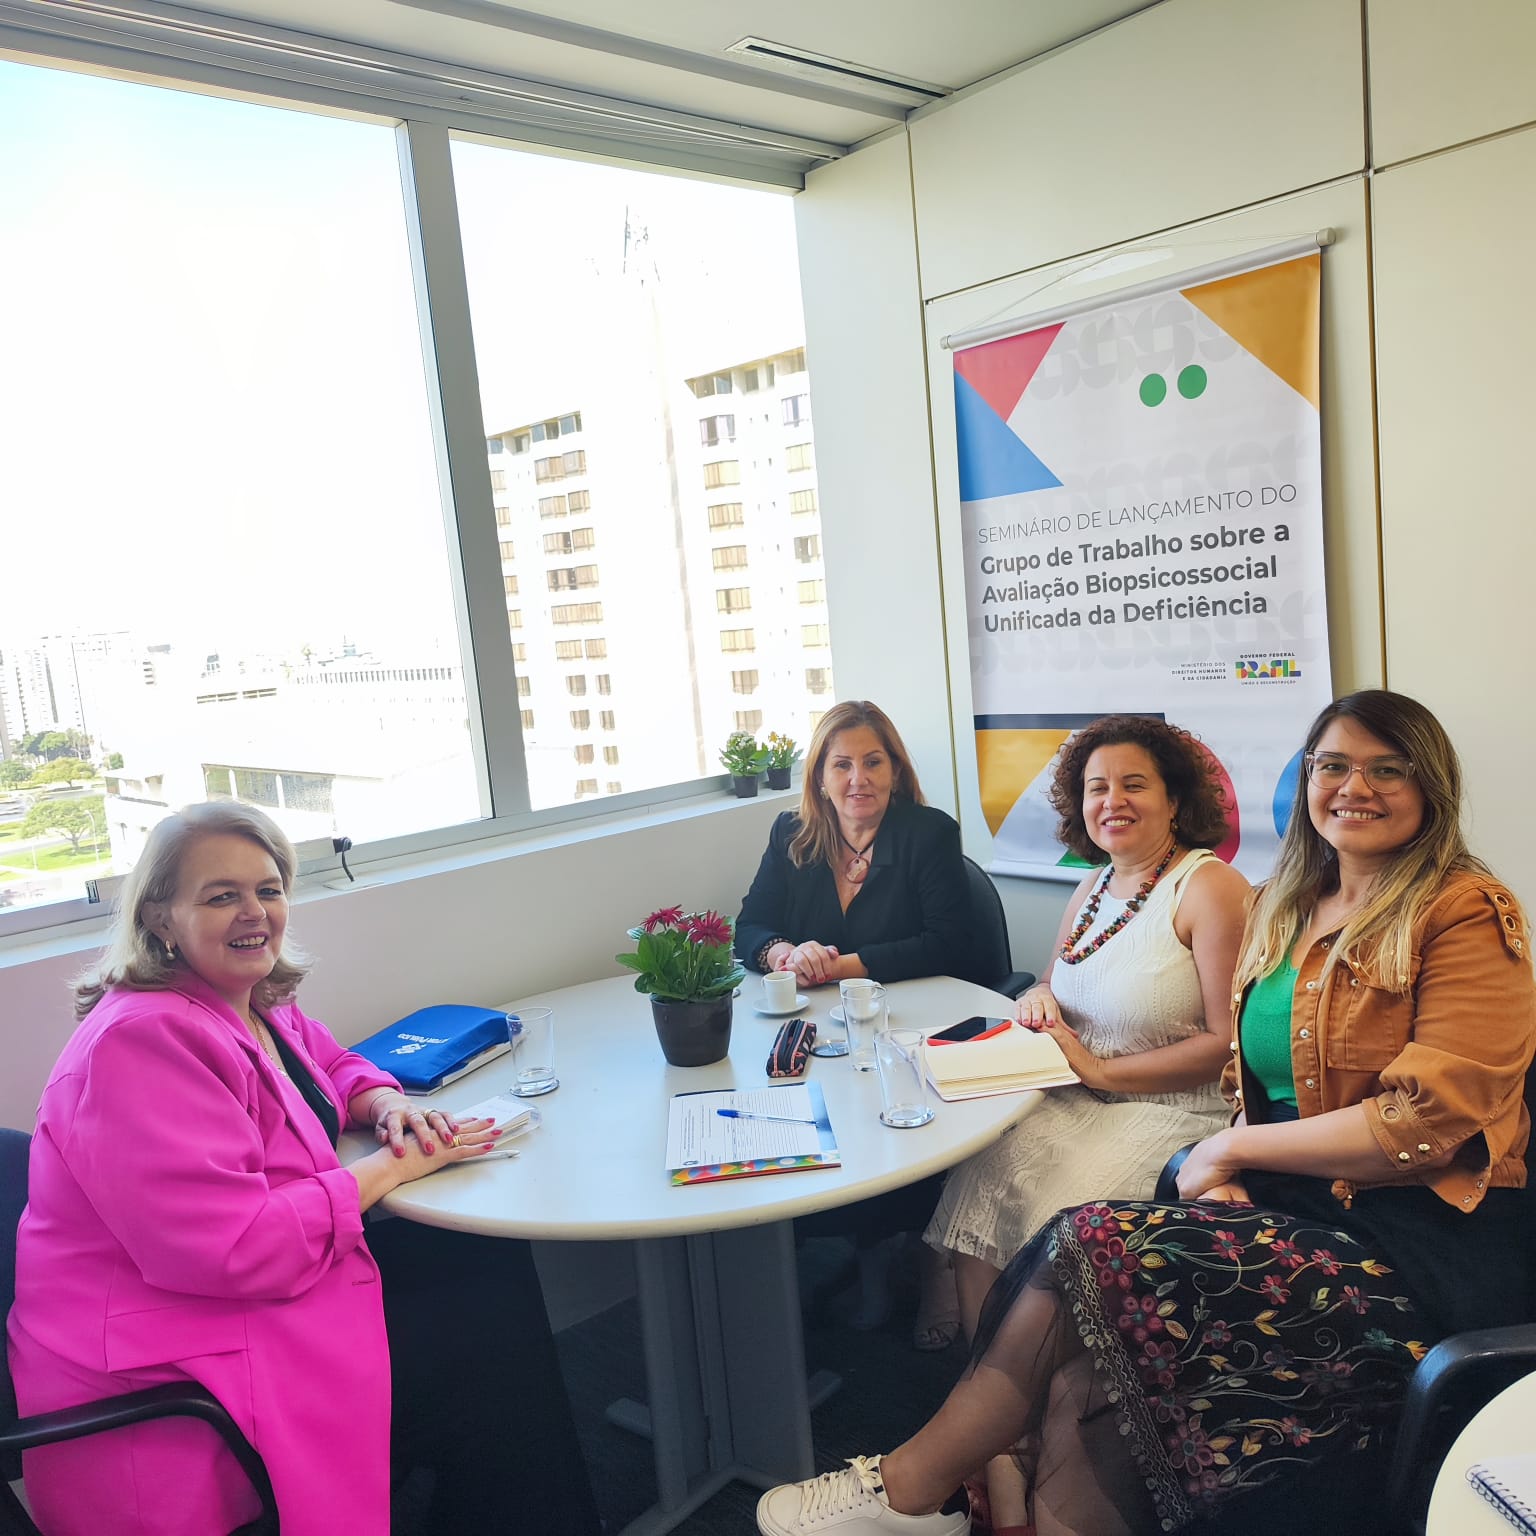 4 mulheres sentadas, sala de reunião, ao fundo banner com texto - Grupo de Trabalho sobre a Avaliação Biopsicossocial Unificada da Deficiência